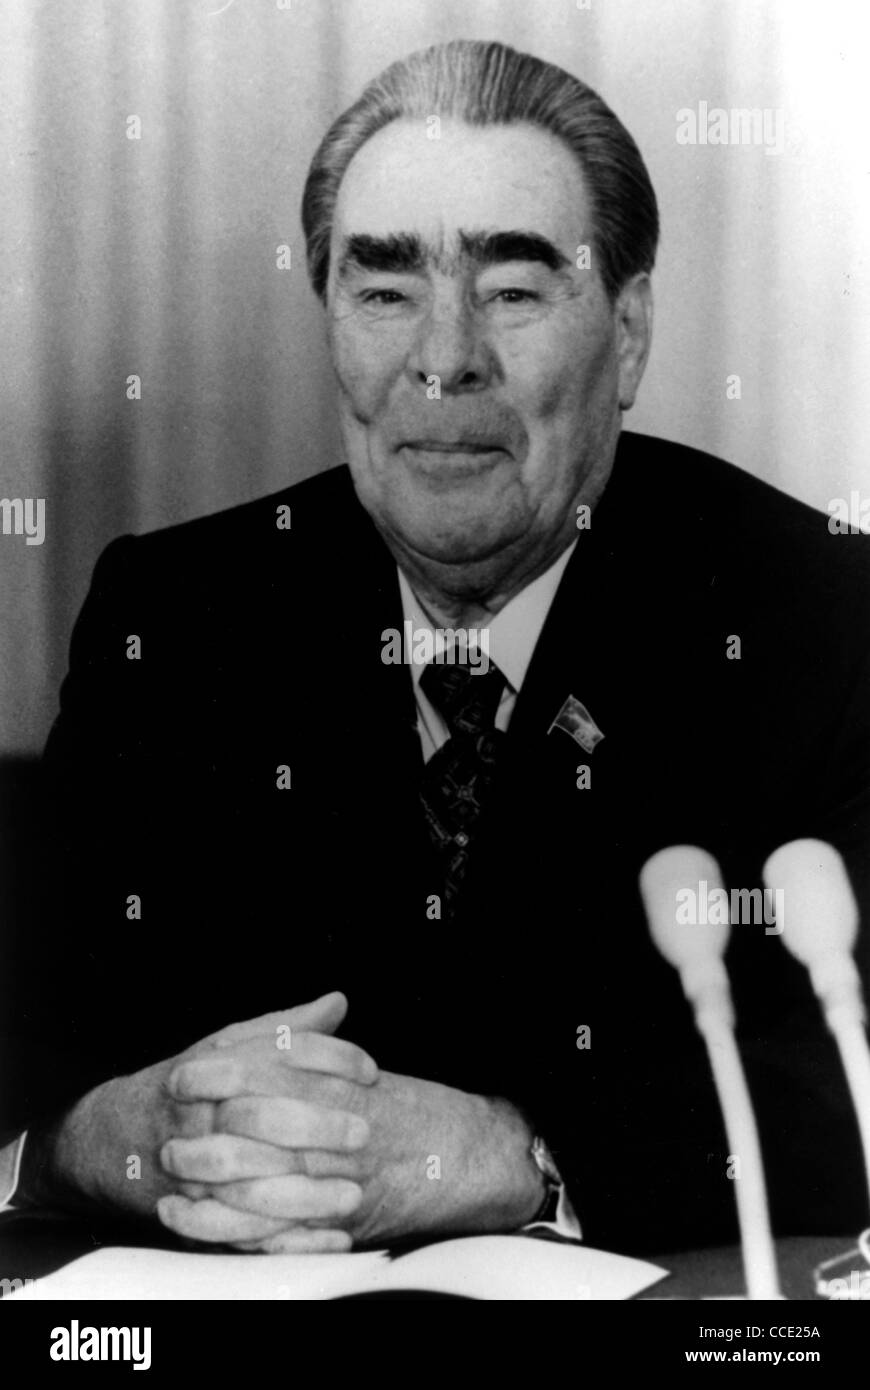 Porträt des sowjetischen Staat und Partei Führer Leonid Brezhnev auf einer Pressekonferenz 1981 in Bonn. Stockfoto